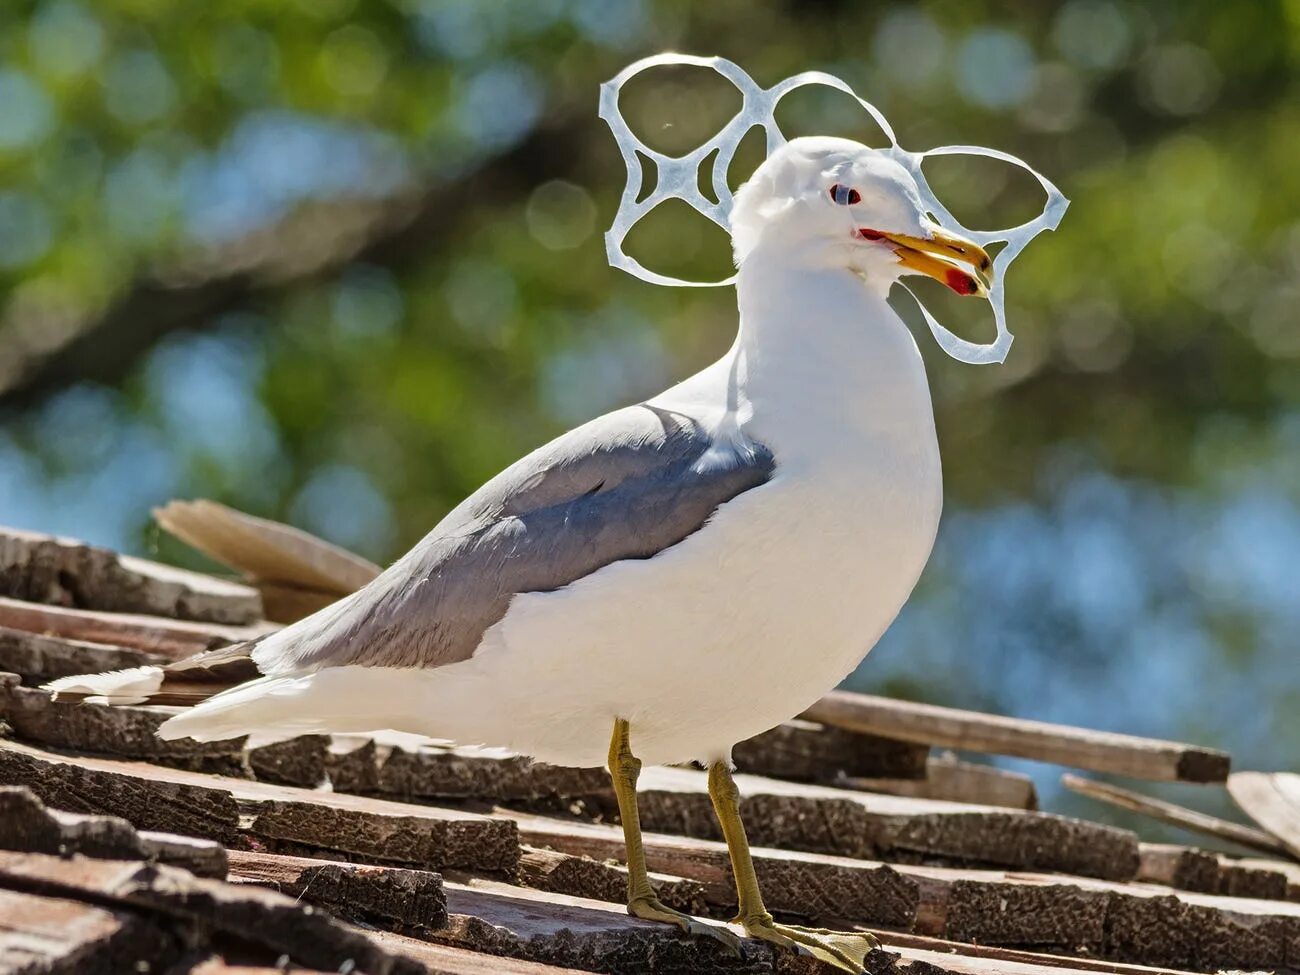 Plastic animals. Птицы и пластик. Морские птицы и пластик. Птица в пластике. Мусо́рные птицы.